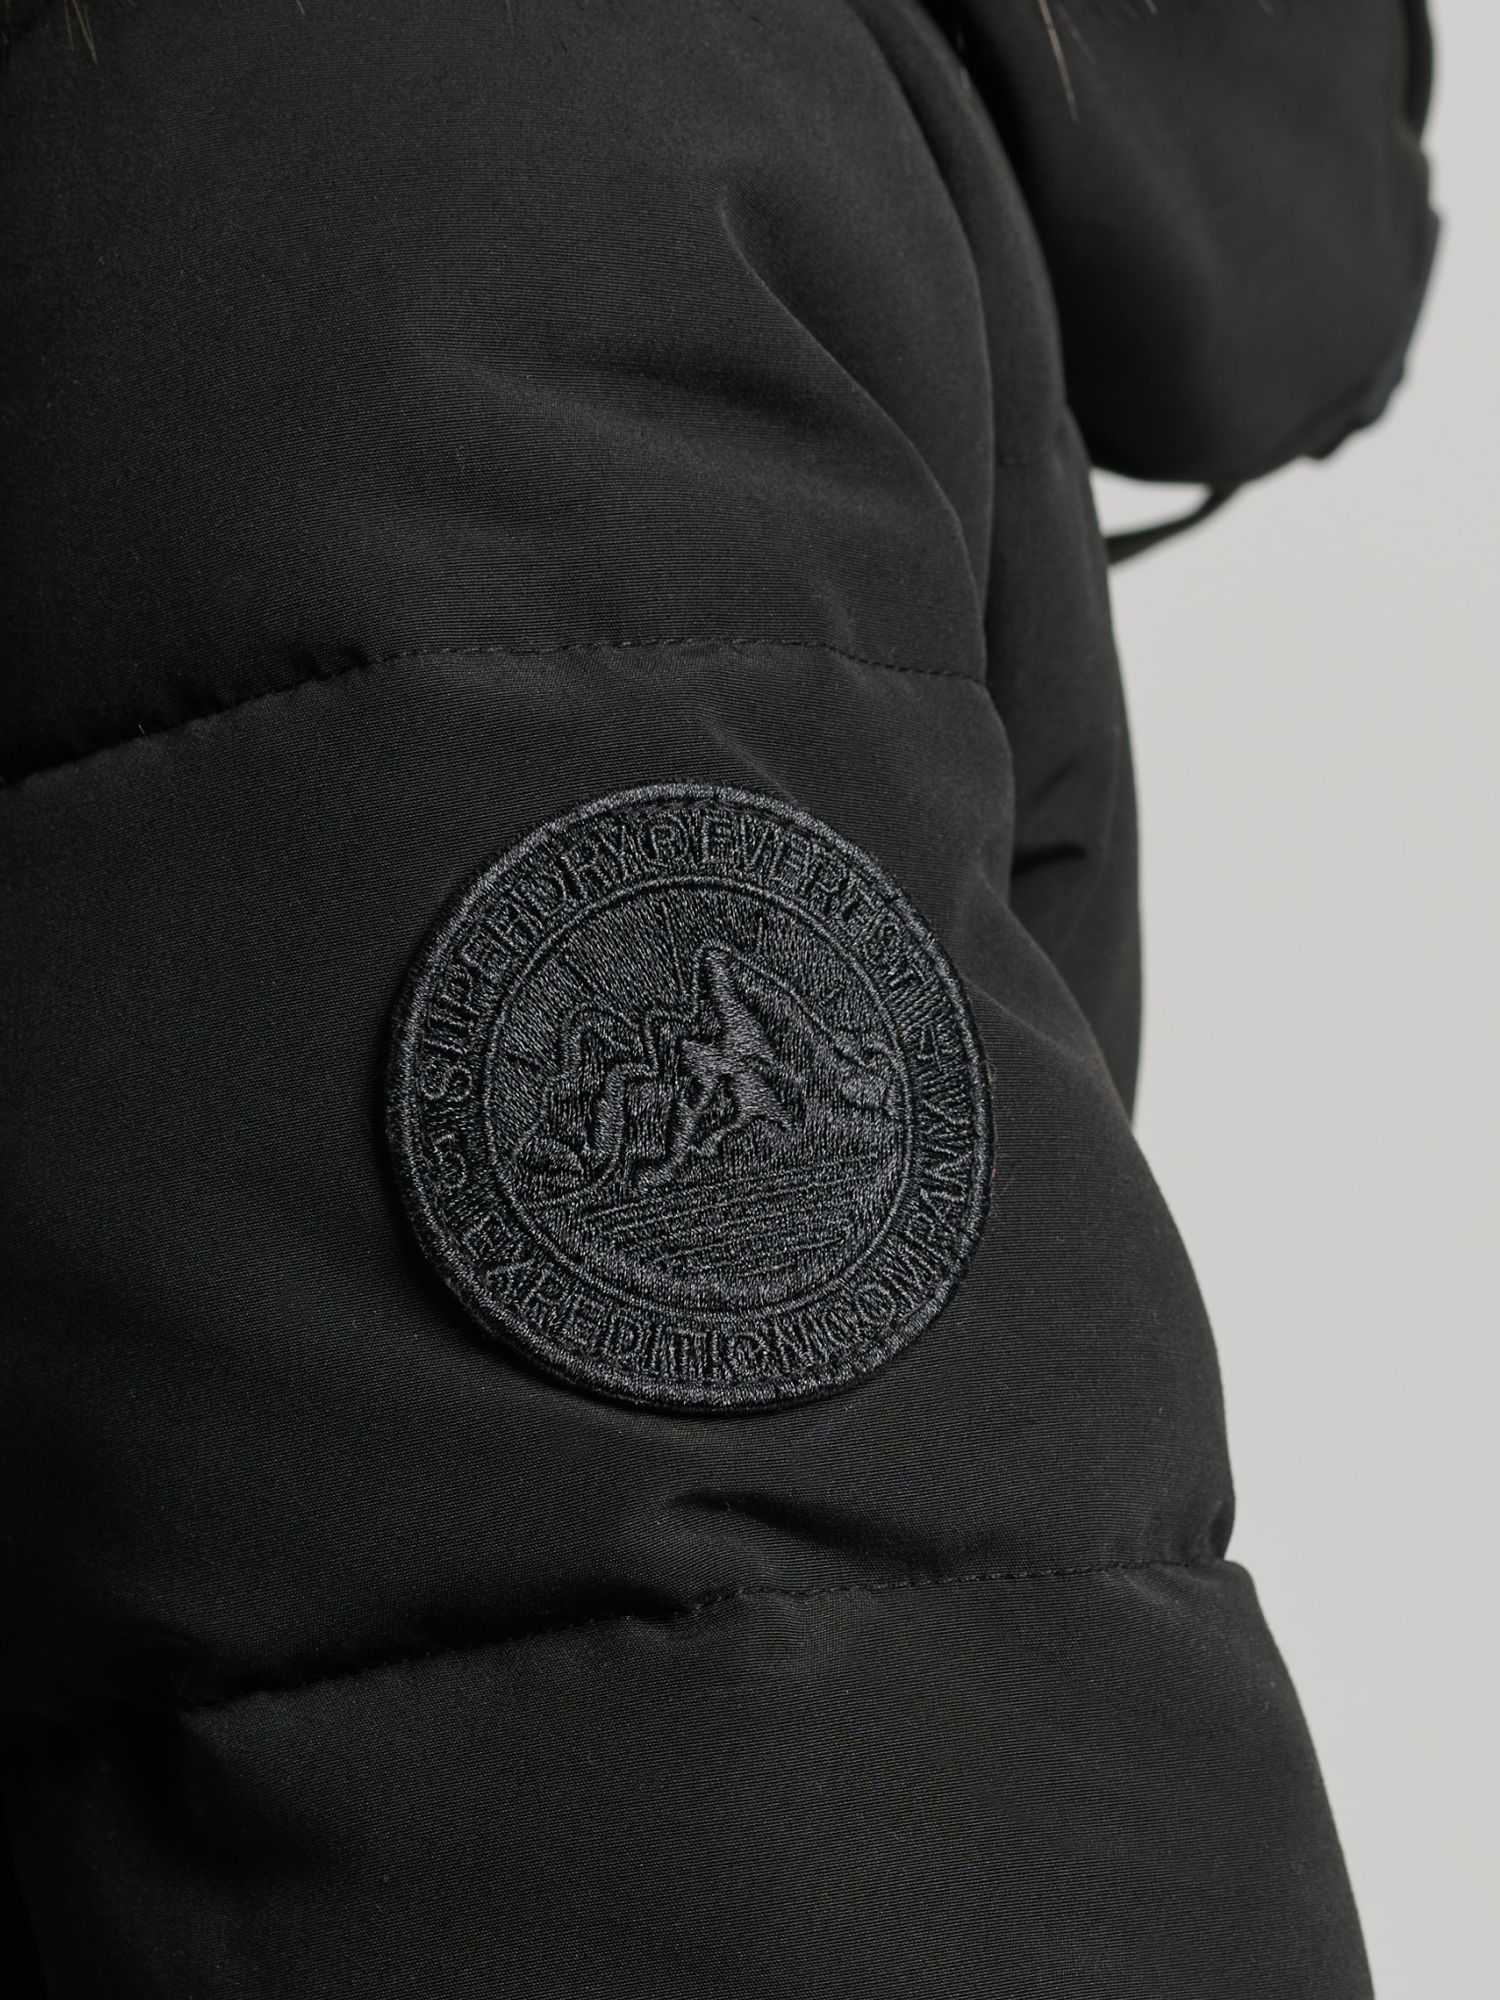 Superdry Original & Vintage Everest Long Line Faux Fur Parka Jacket, Black, 8